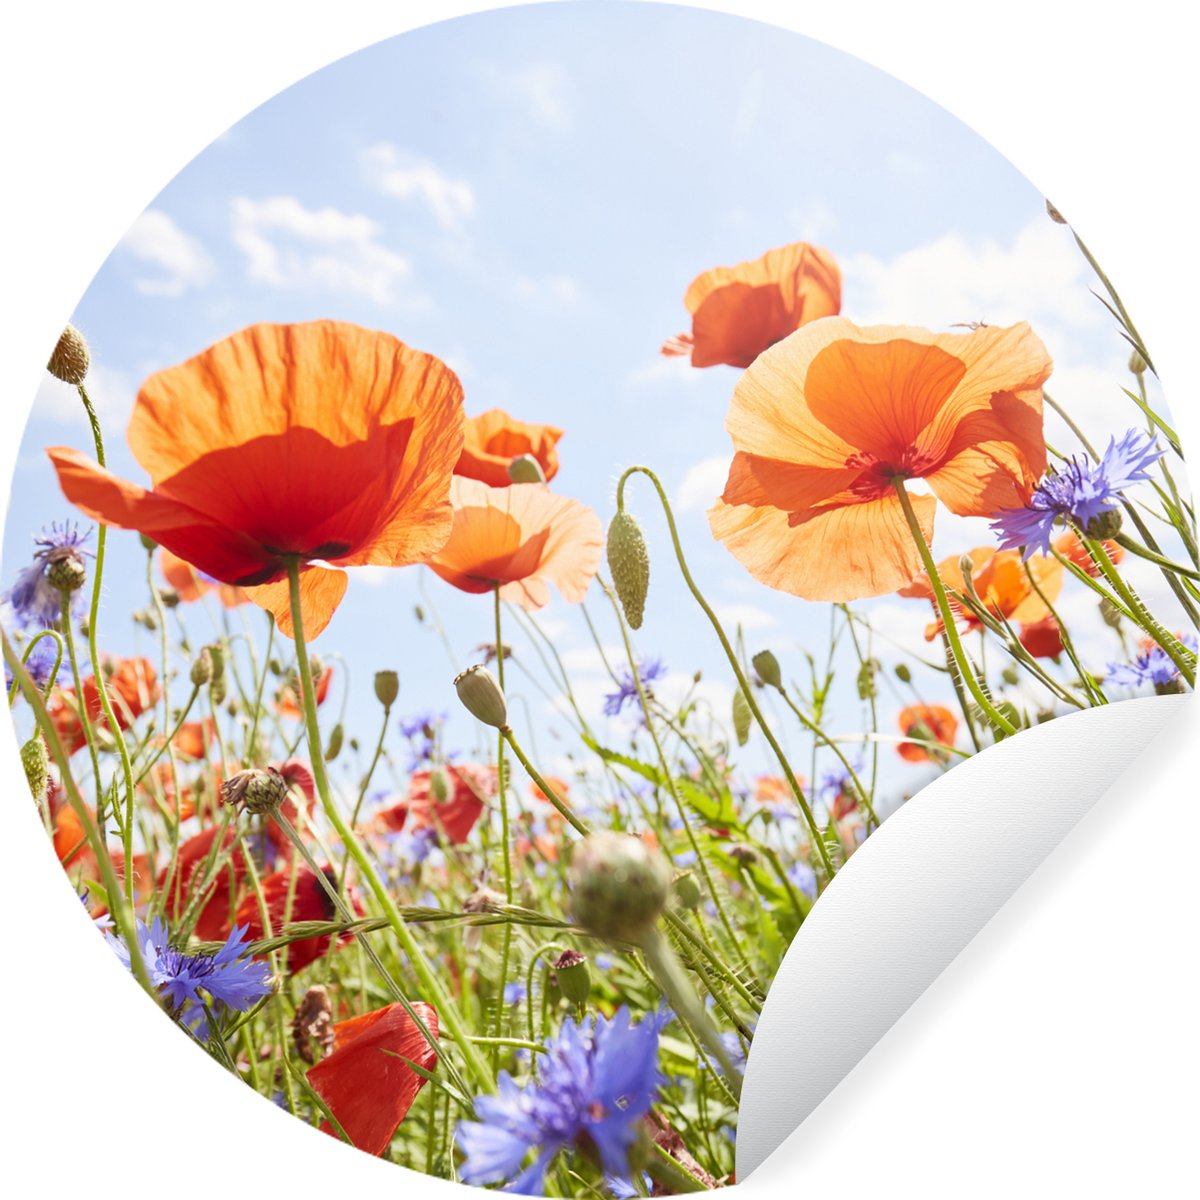 Stickers muraux - Film autocollant - Papillon - Lavande - Fleurs - Violet -  60x120 cm